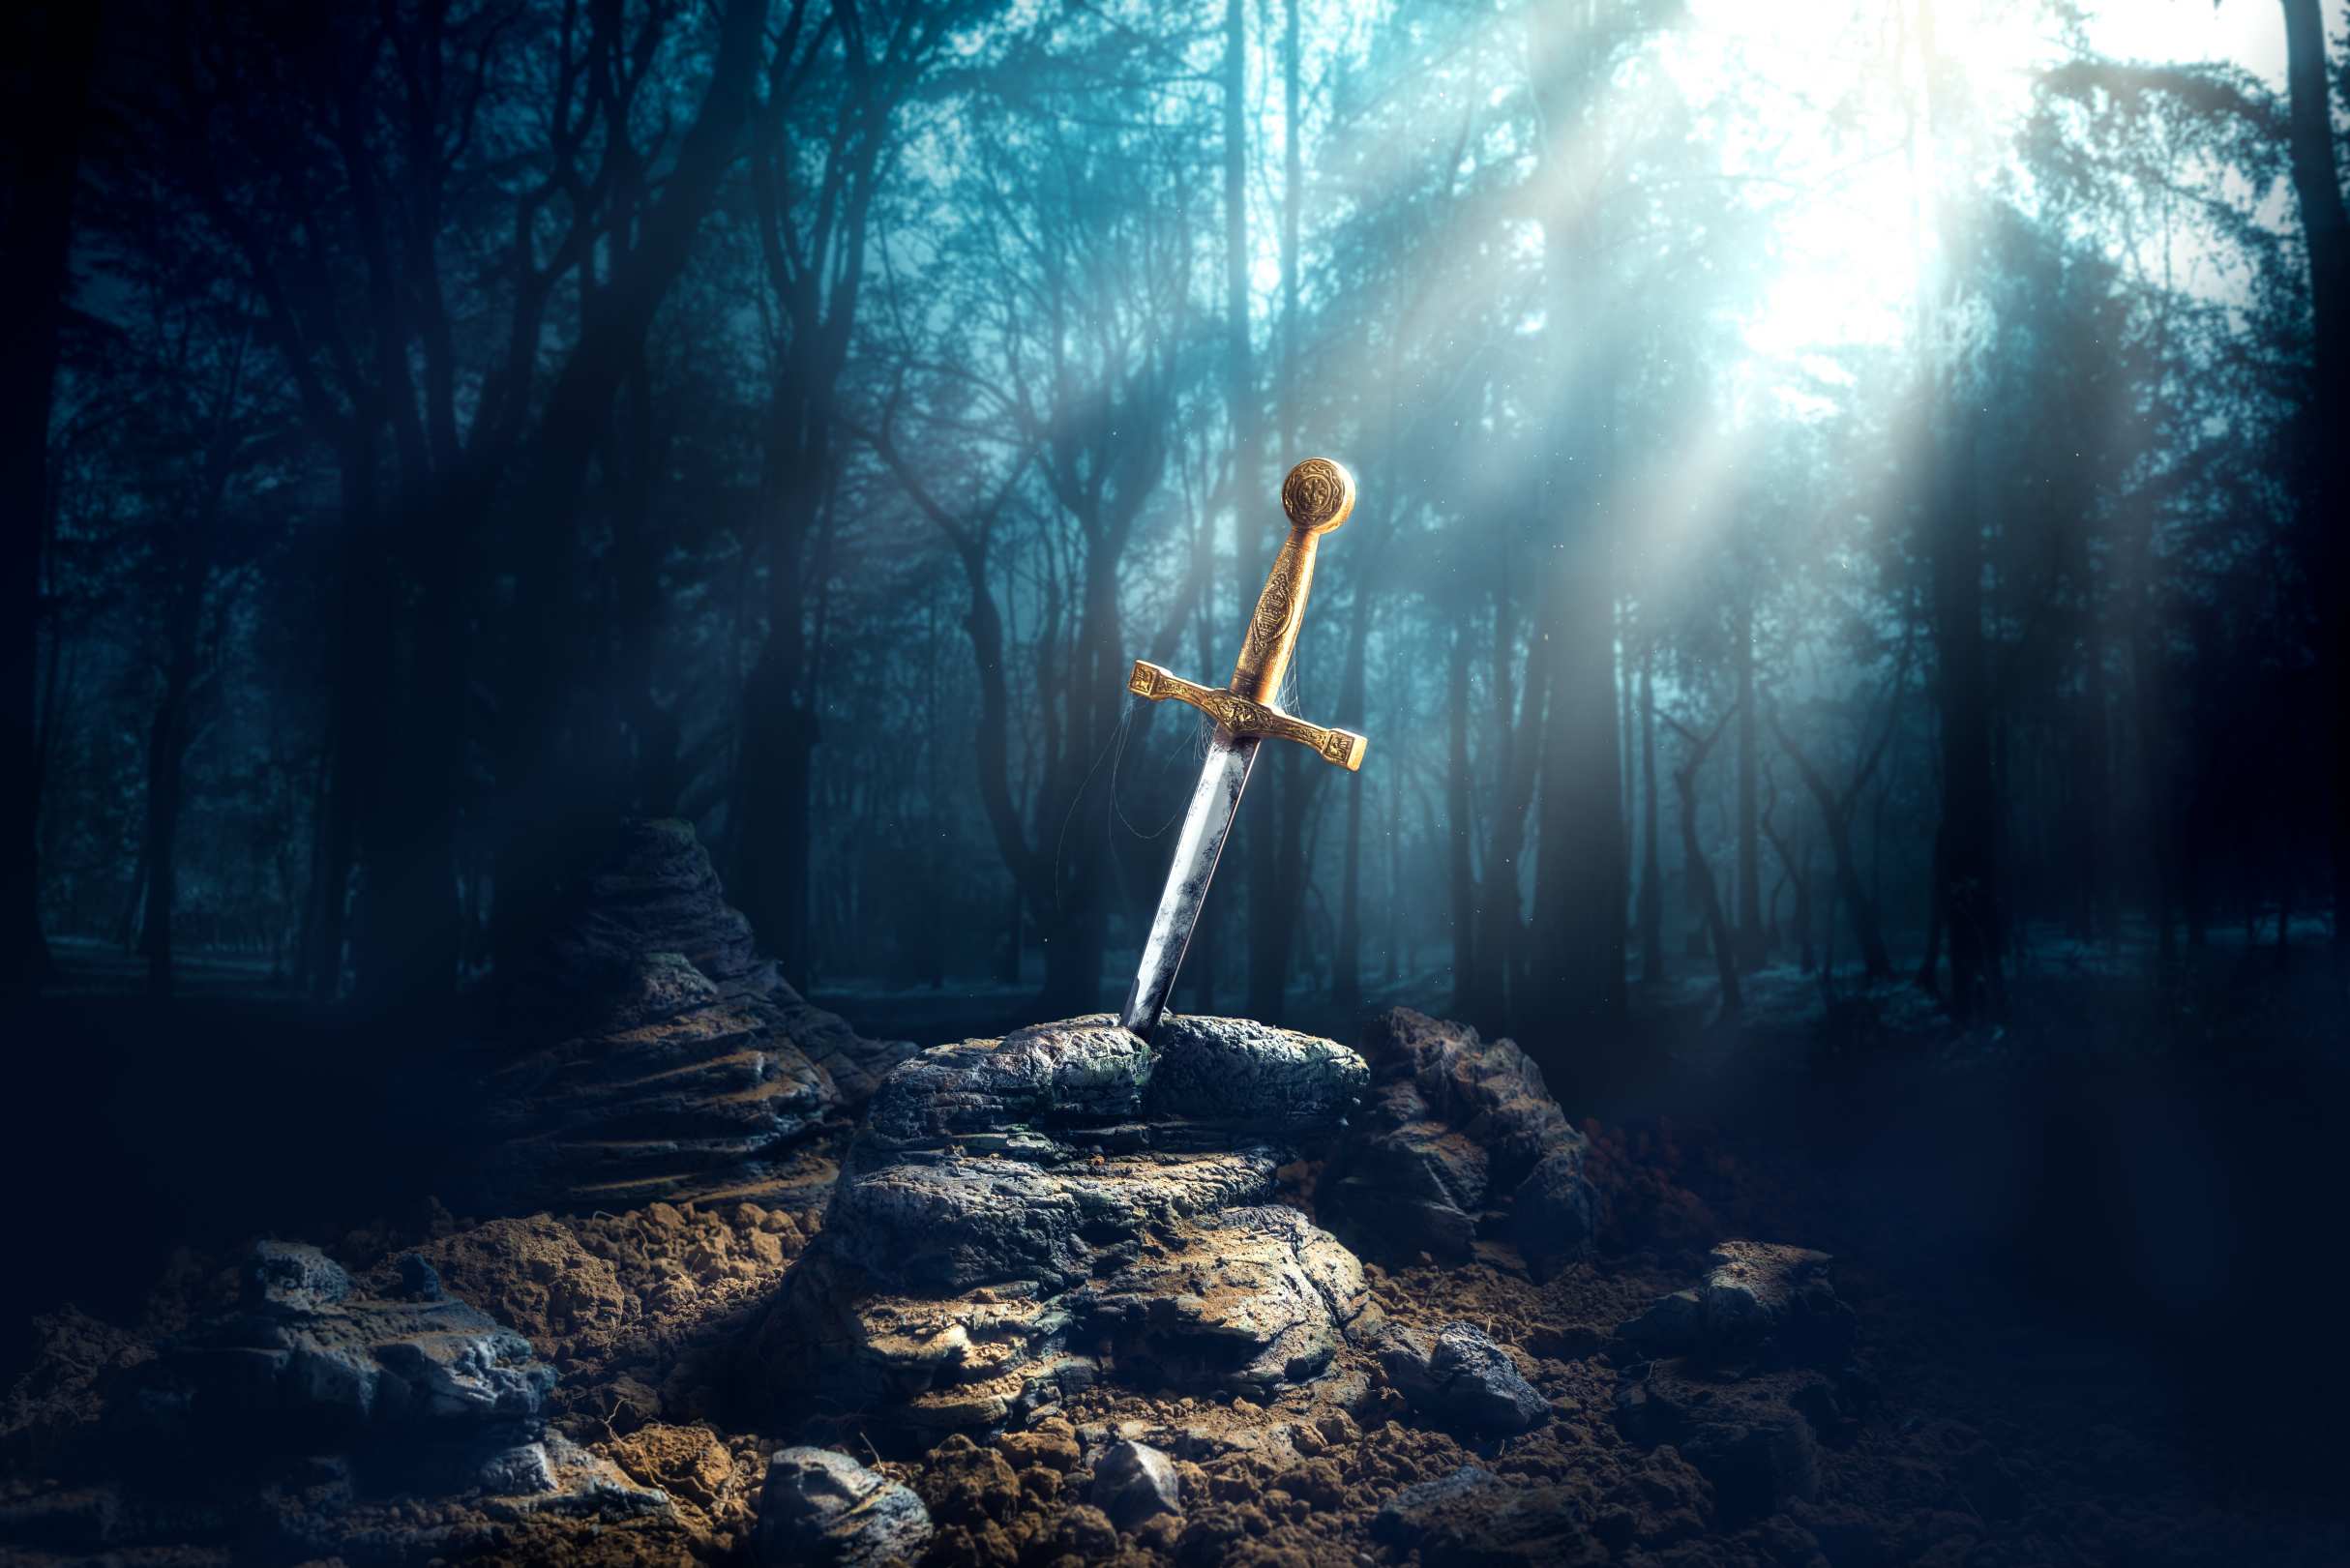 Excalibur, pedang di dalam batu dengan sinar cahaya dan spesifikasi debu di dalam hutan yang gelap